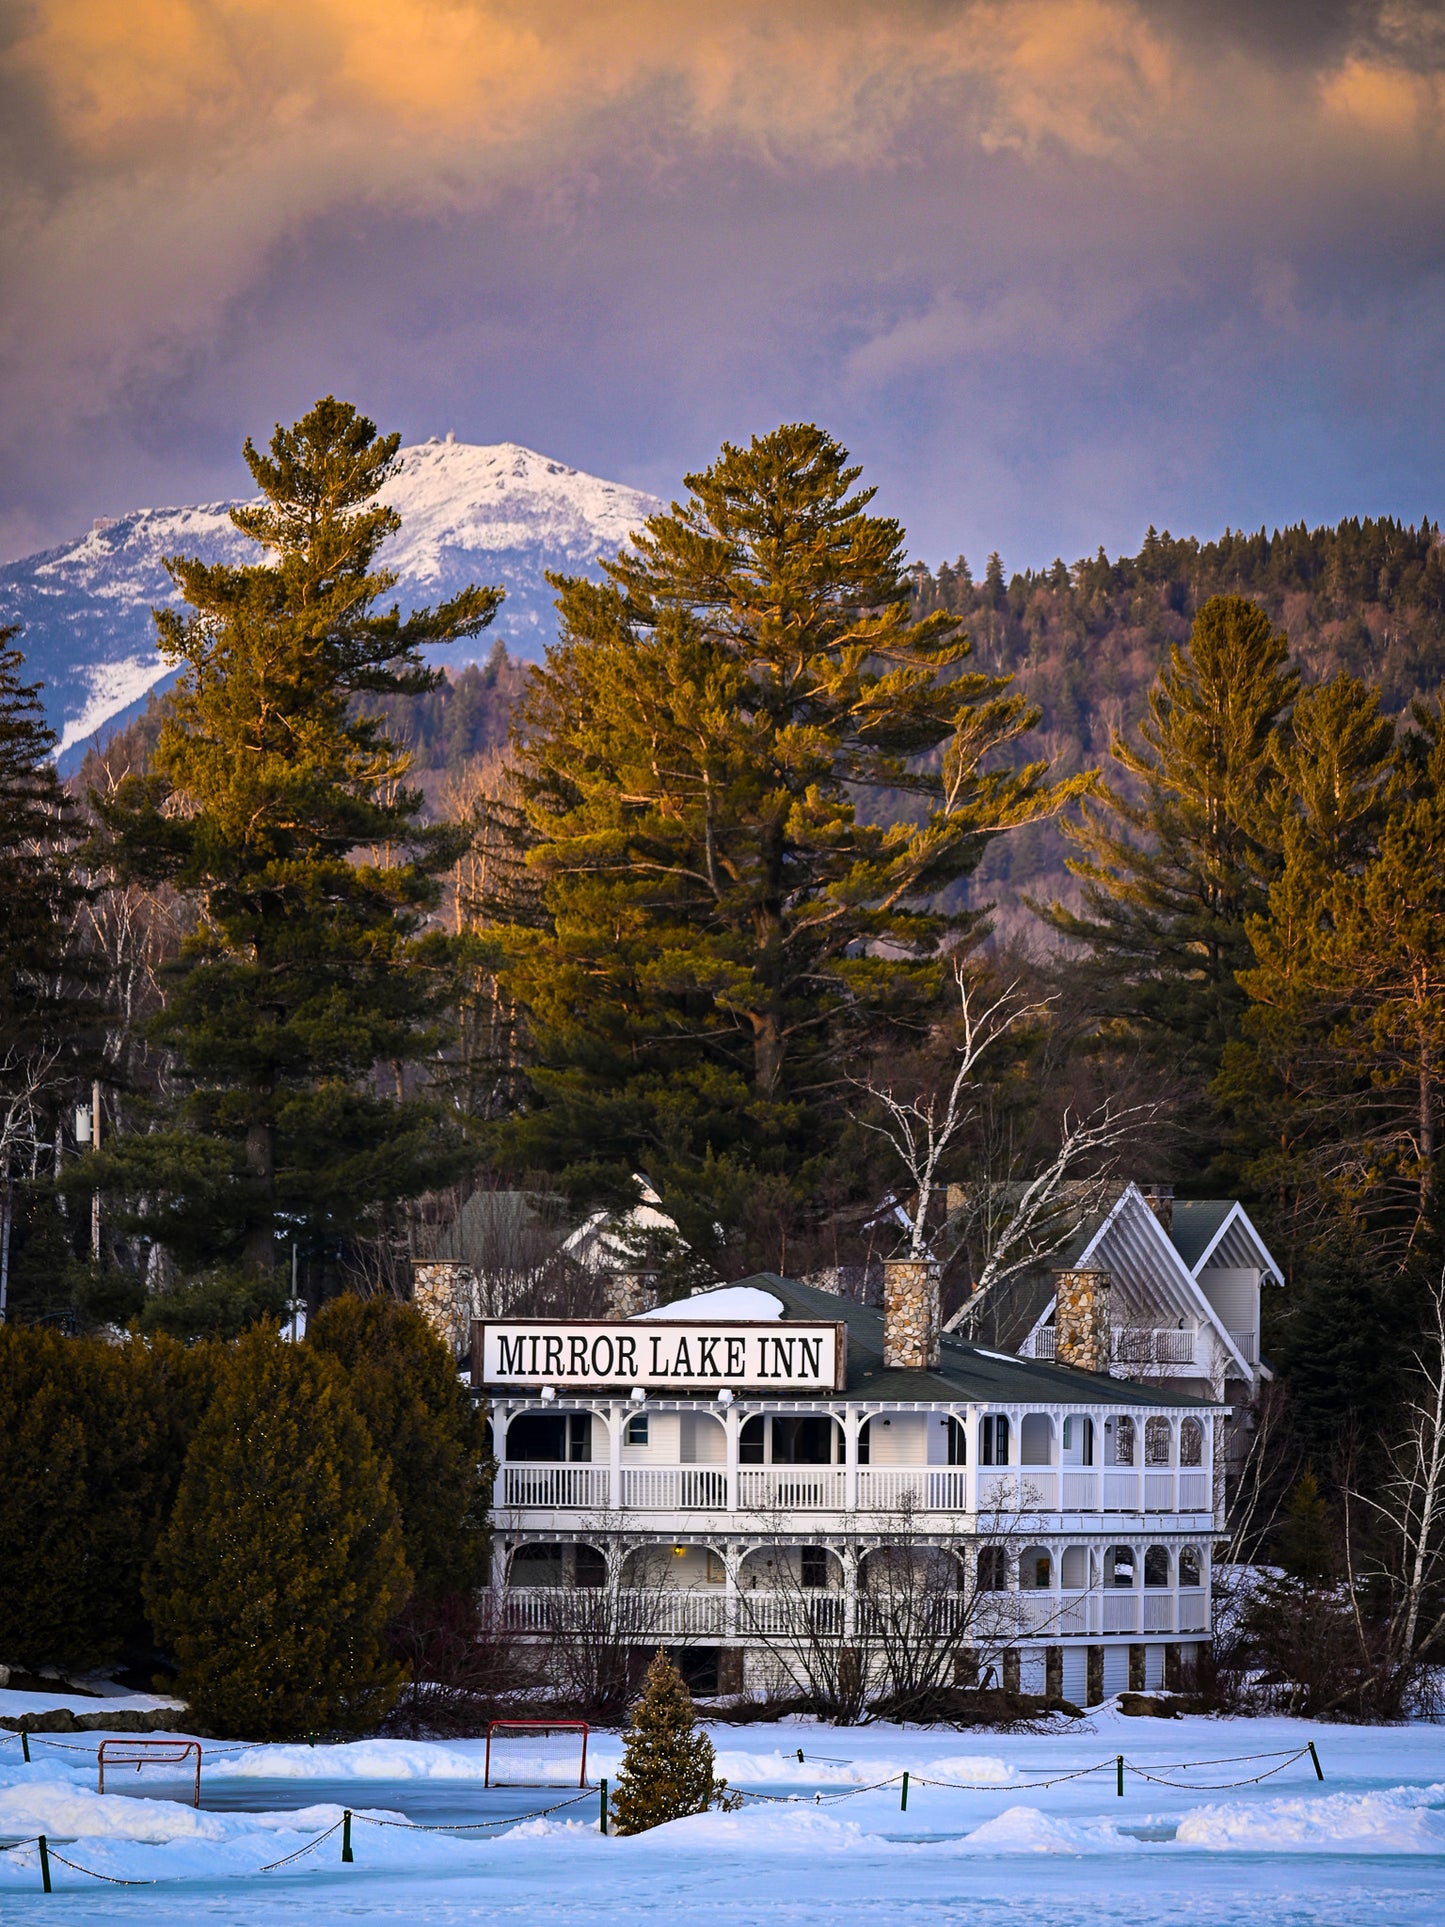 Whiteface Mountain and Mirror Lake Inn